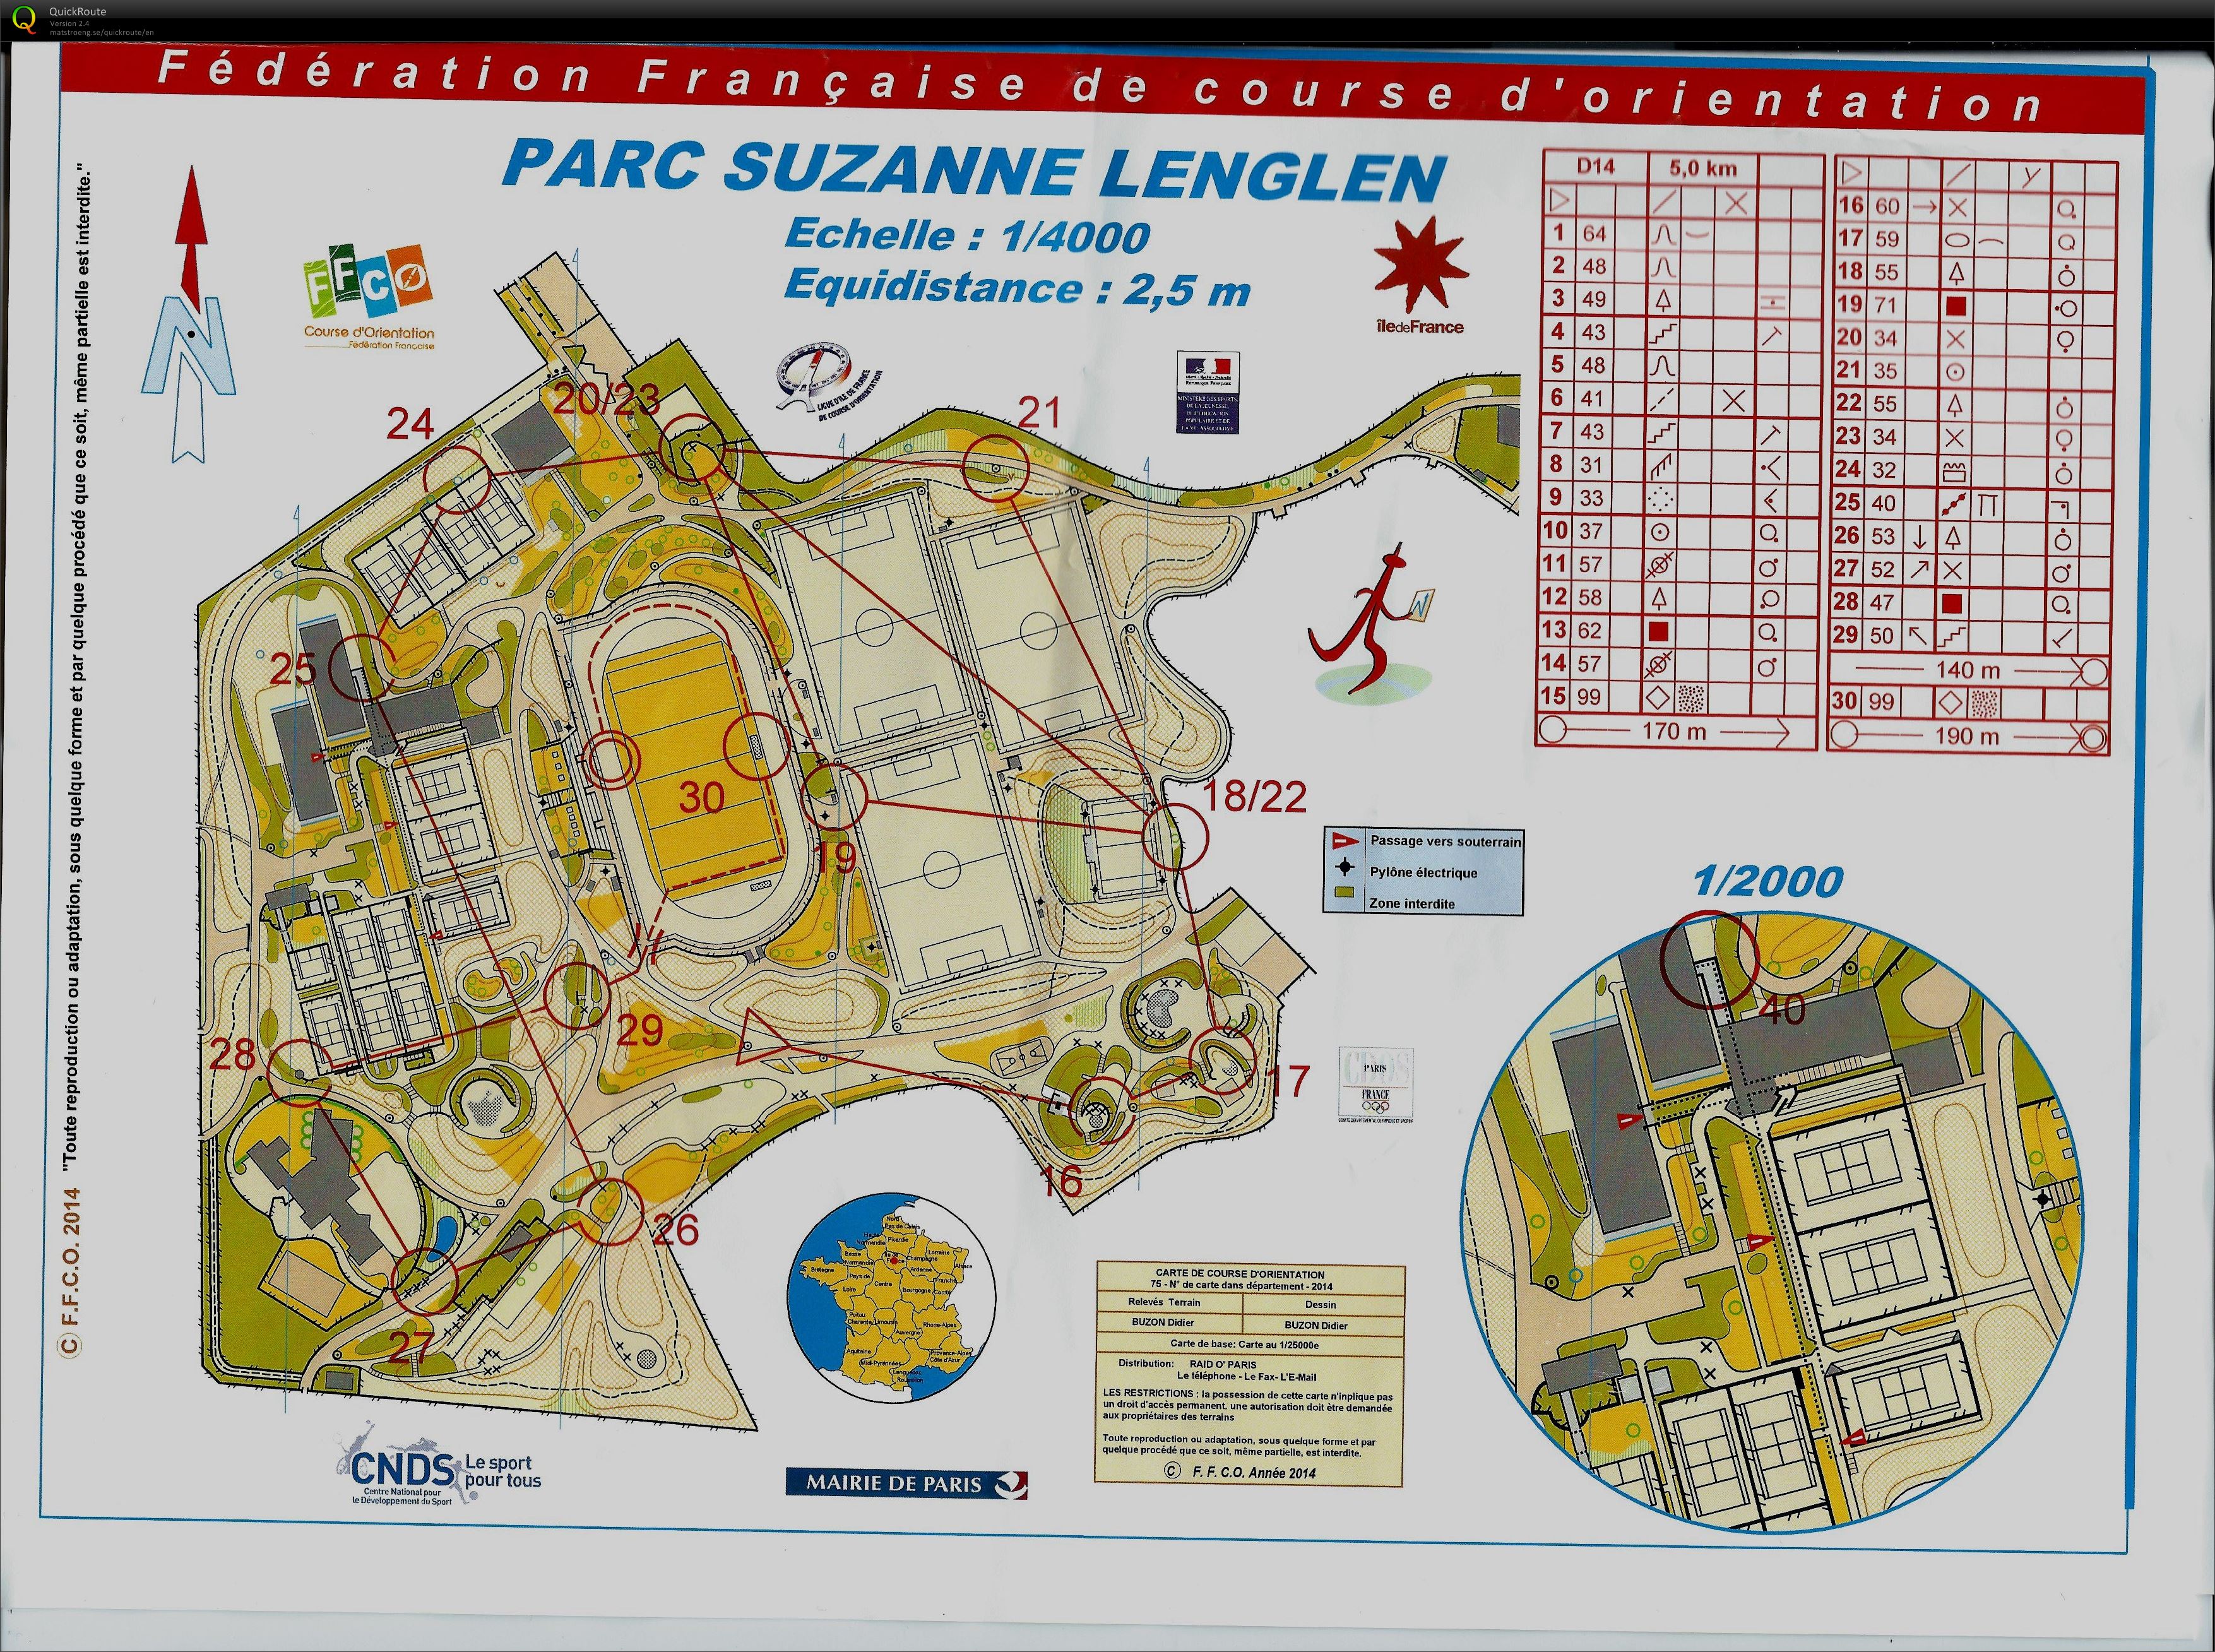 Parc Suzanne Lenglen (2014-09-28)